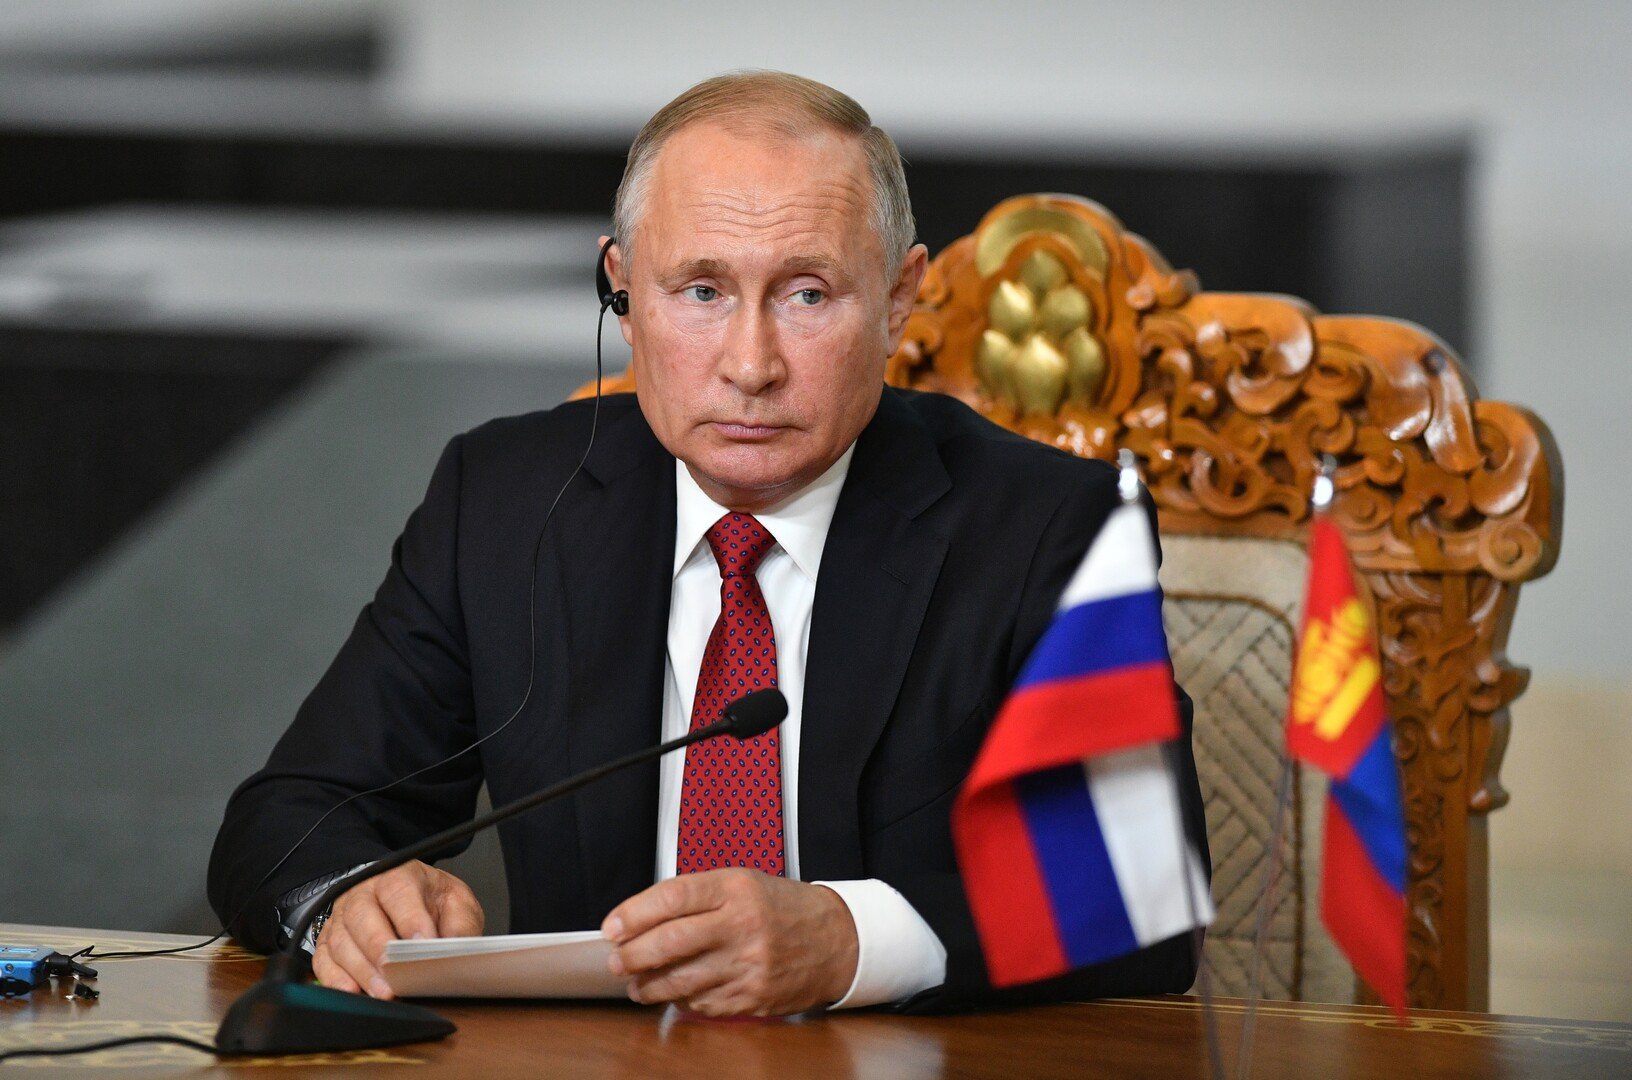 صندوق مشترك بين روسيا ومنغوليا لتعزيز العلاقات الاقتصادية